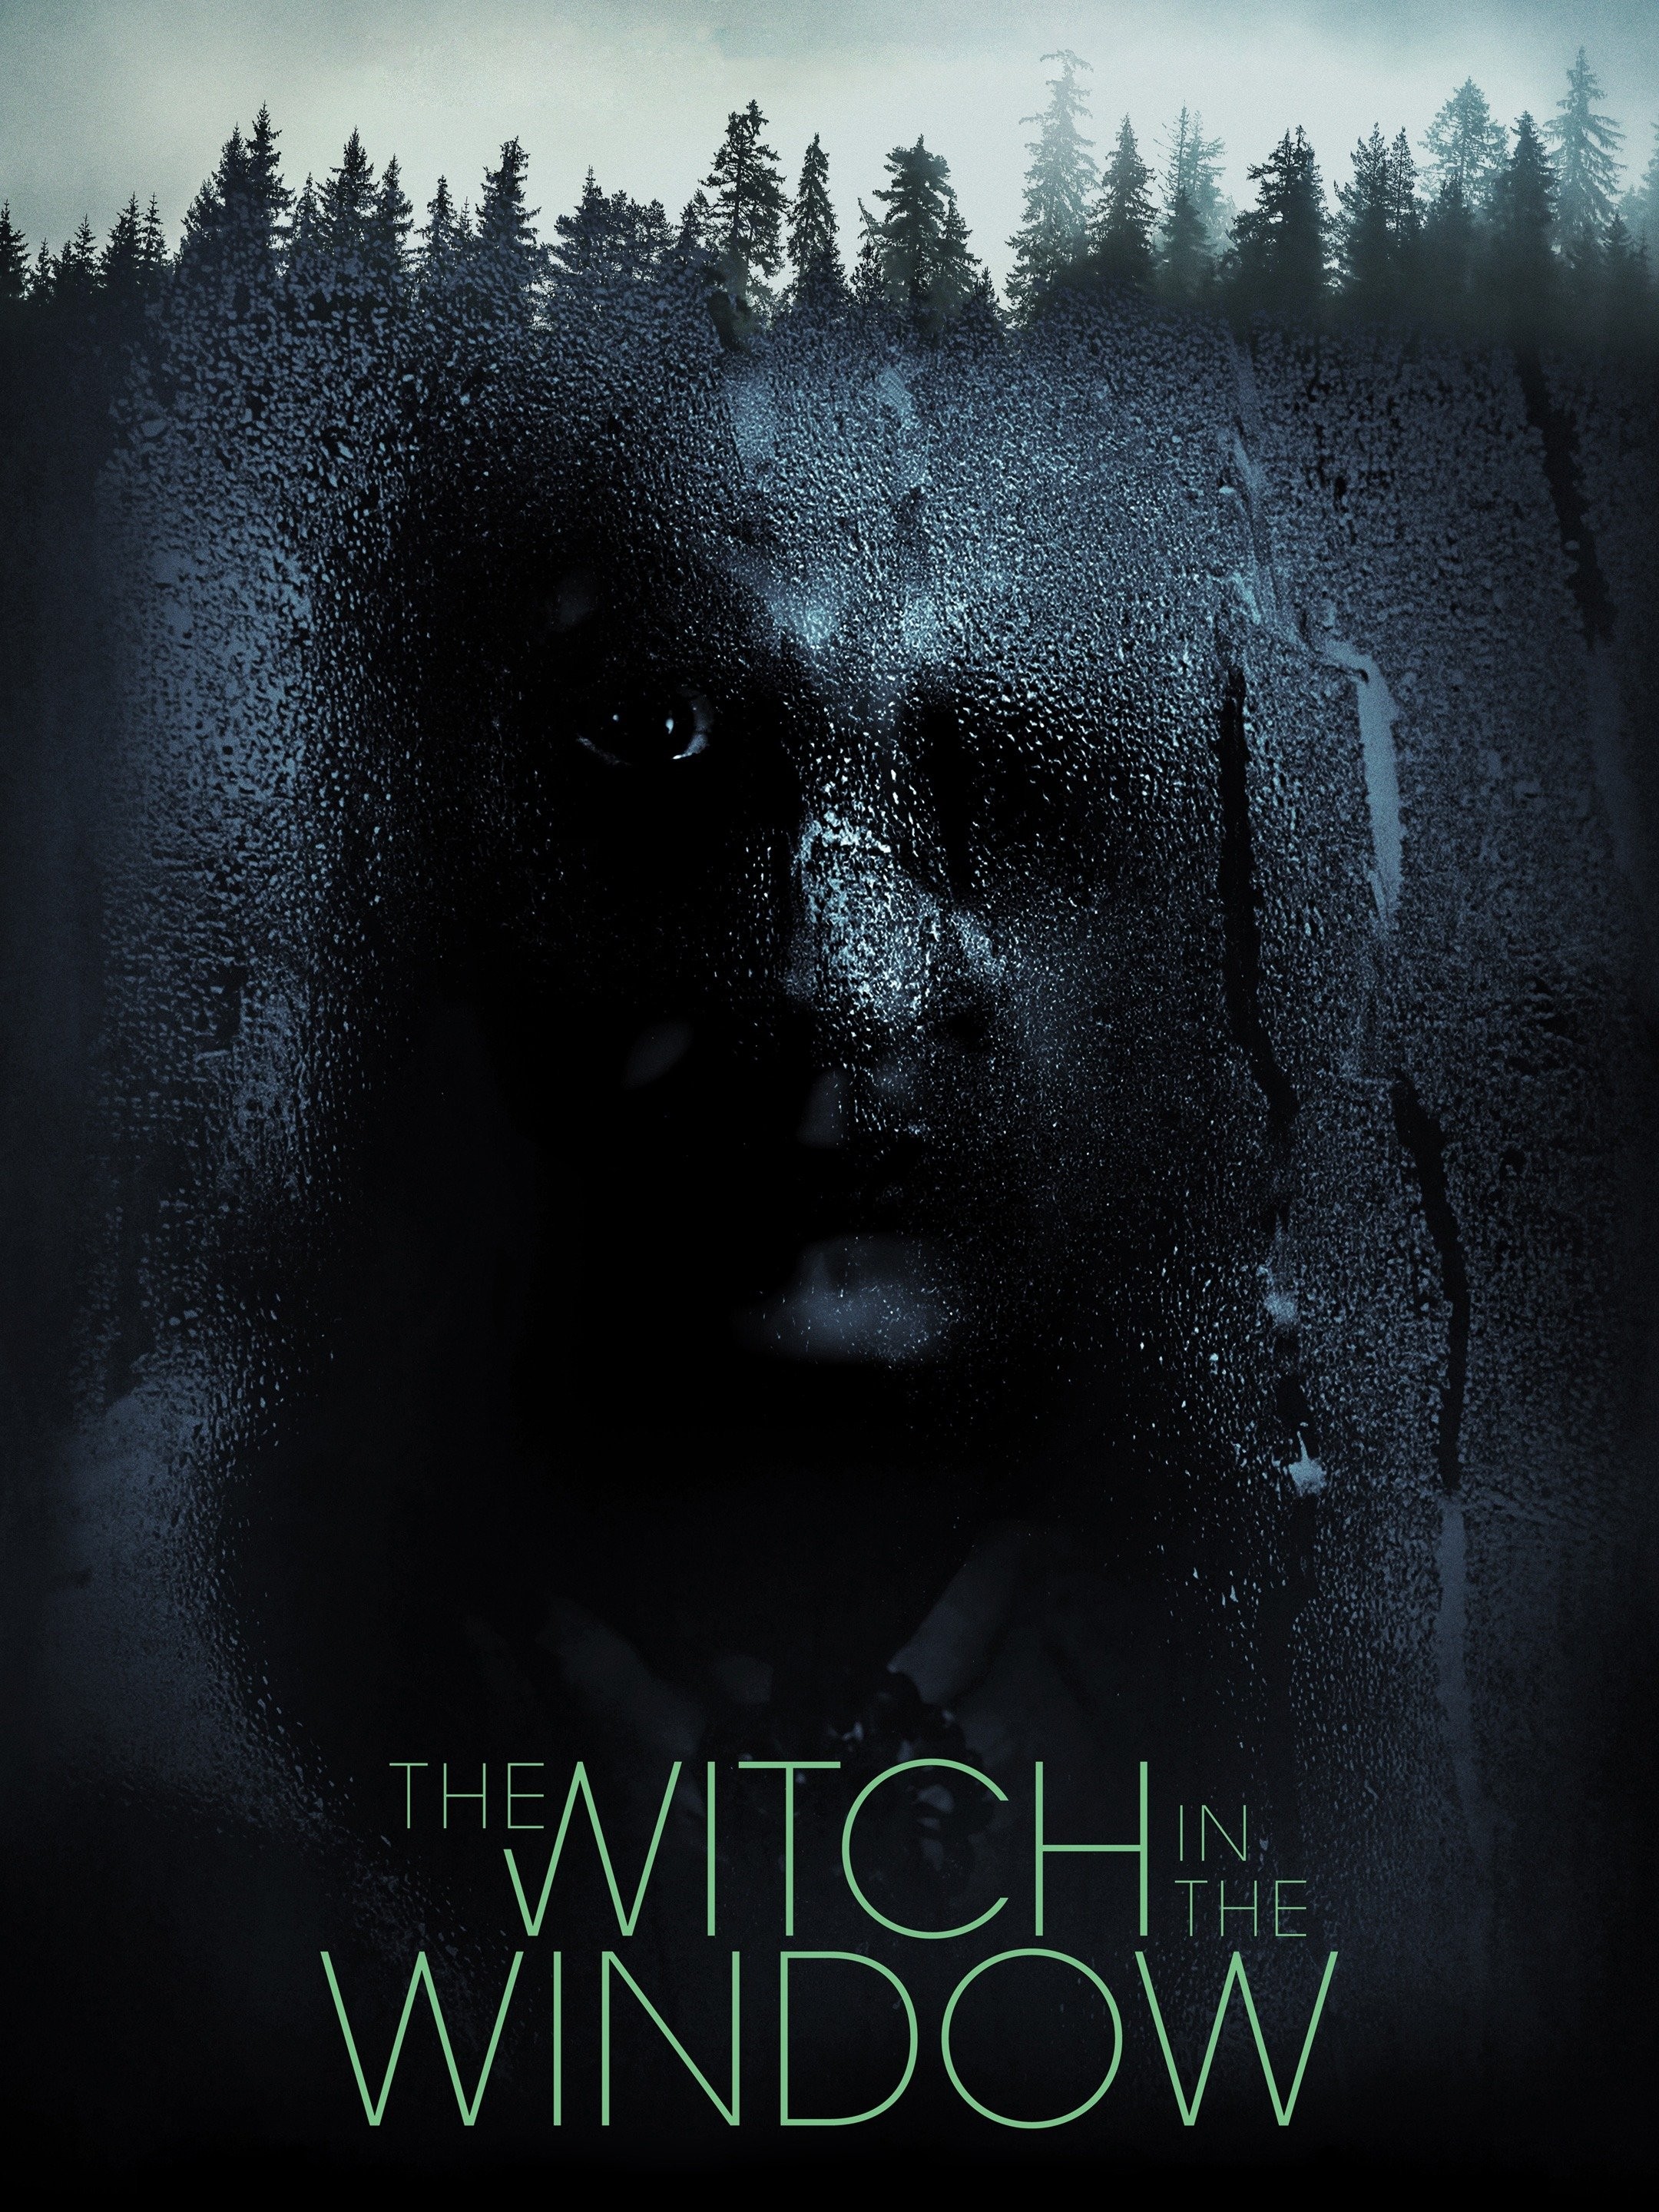 The Dawn of the Witch: Tema de abertura é destaque em trailer